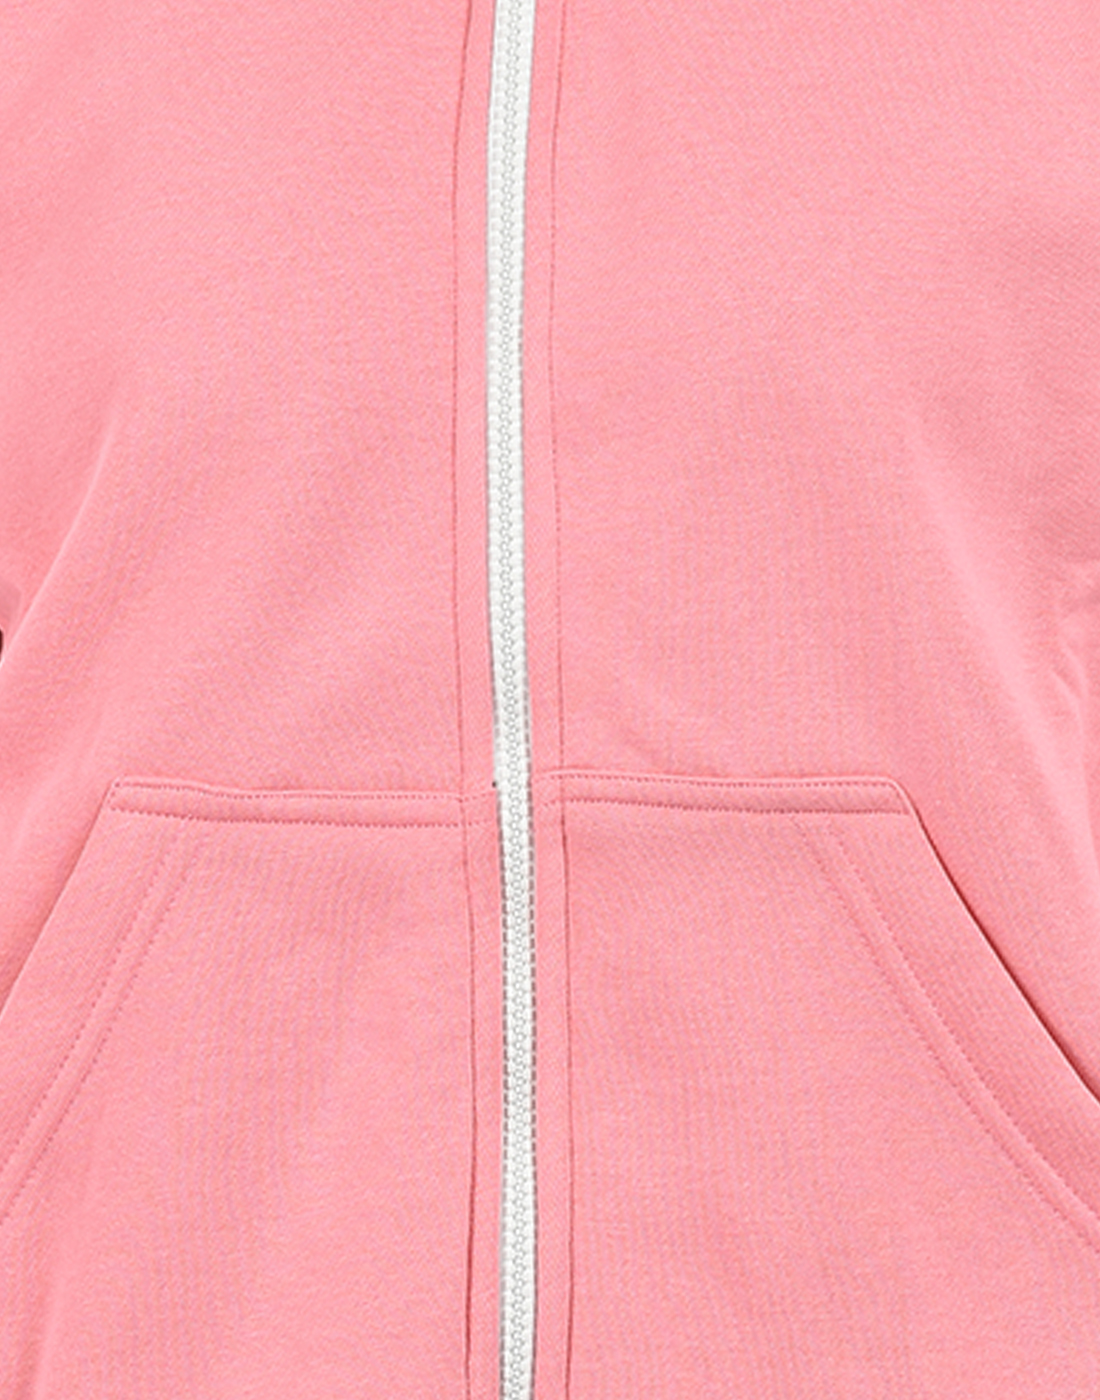 Oneway Women Printed Pink Jacket